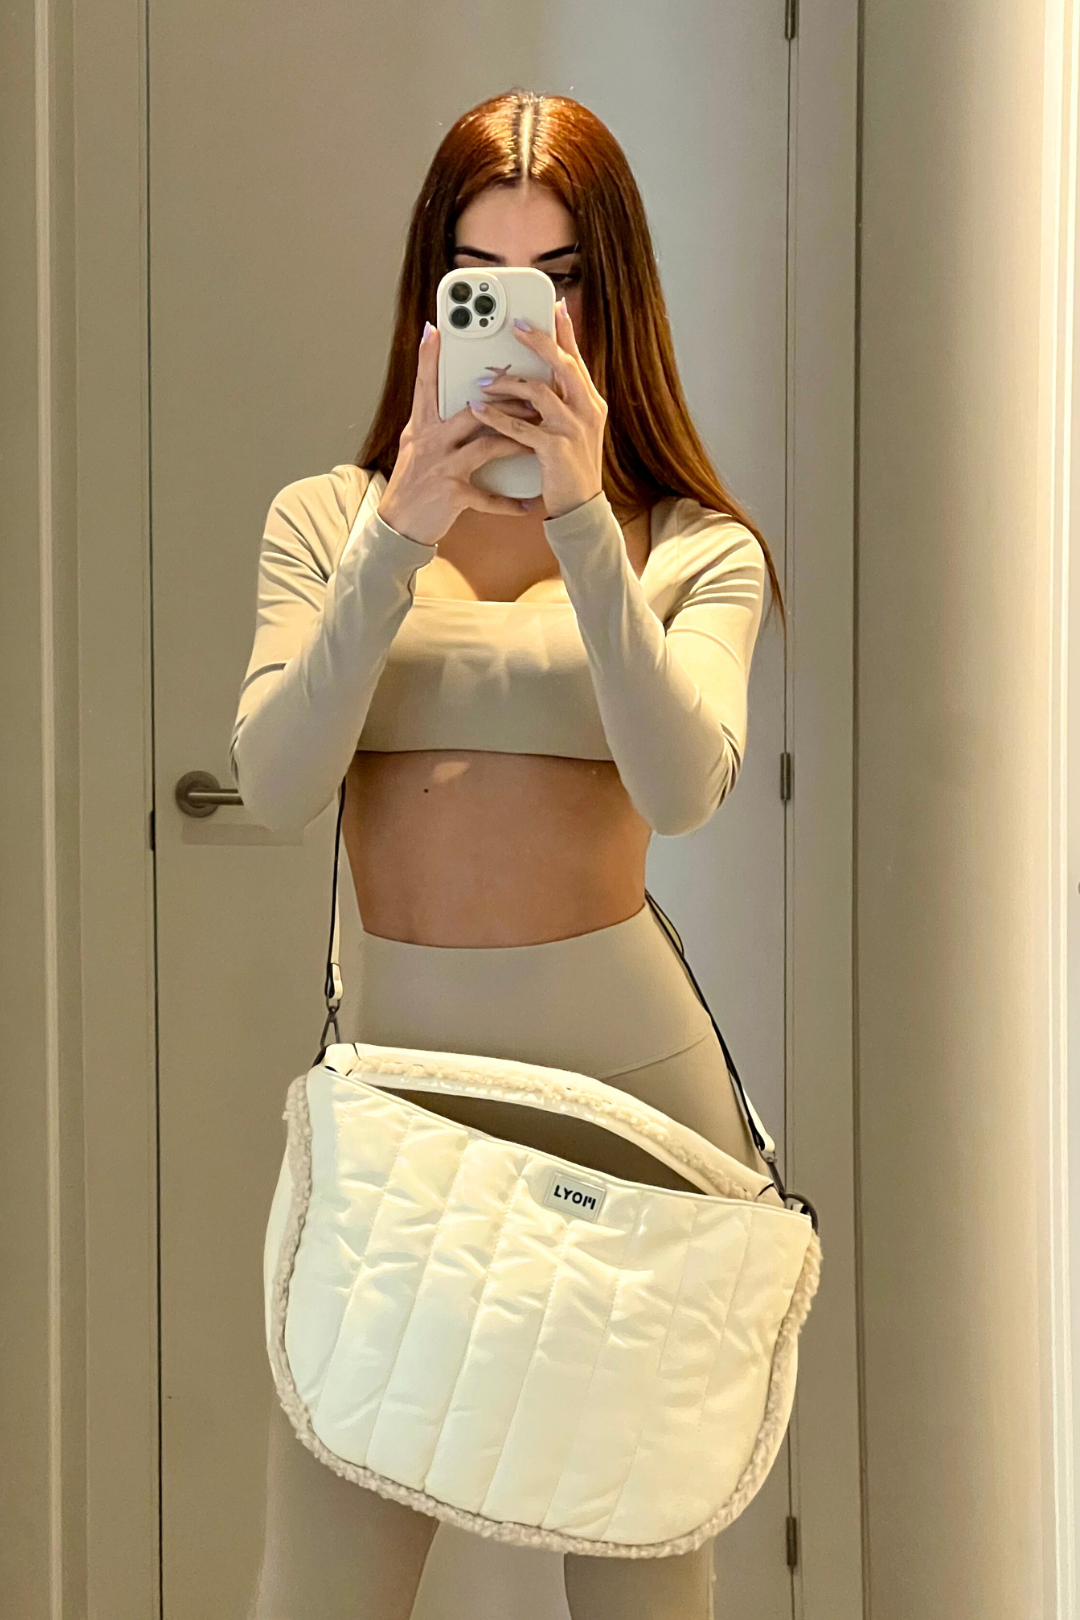 LYOM™ Sporty Chic Bag - White